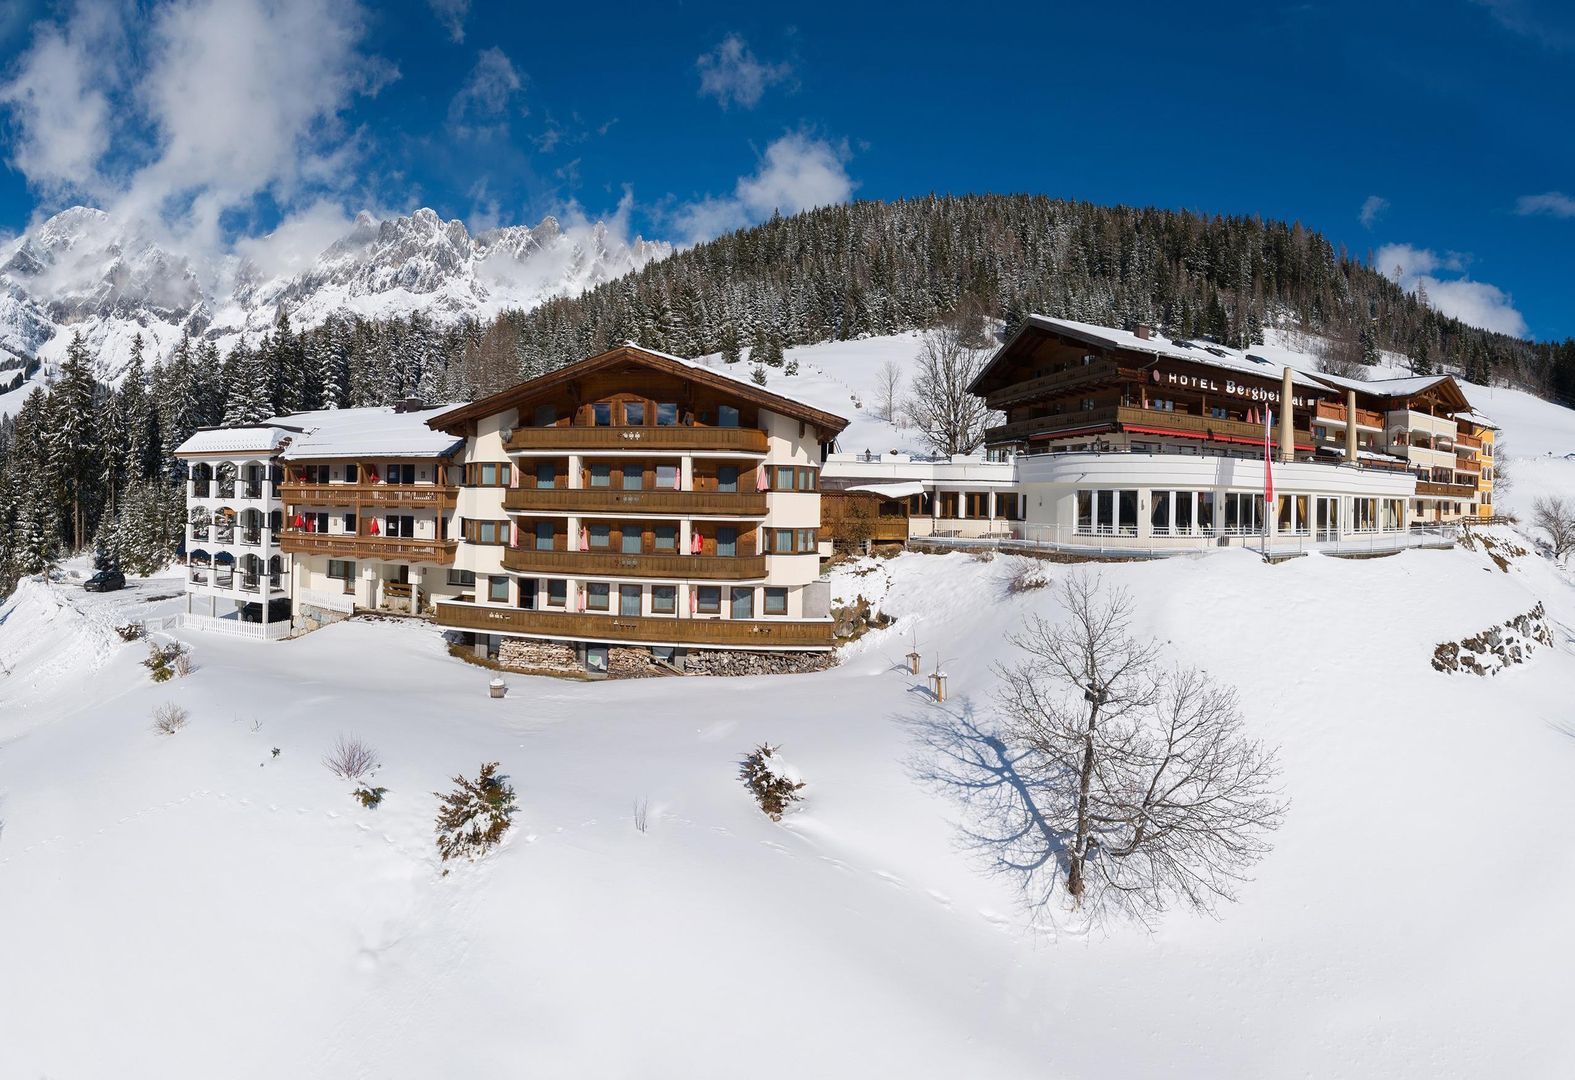 Meer info over Hotel Bergheimat  bij Wintertrex